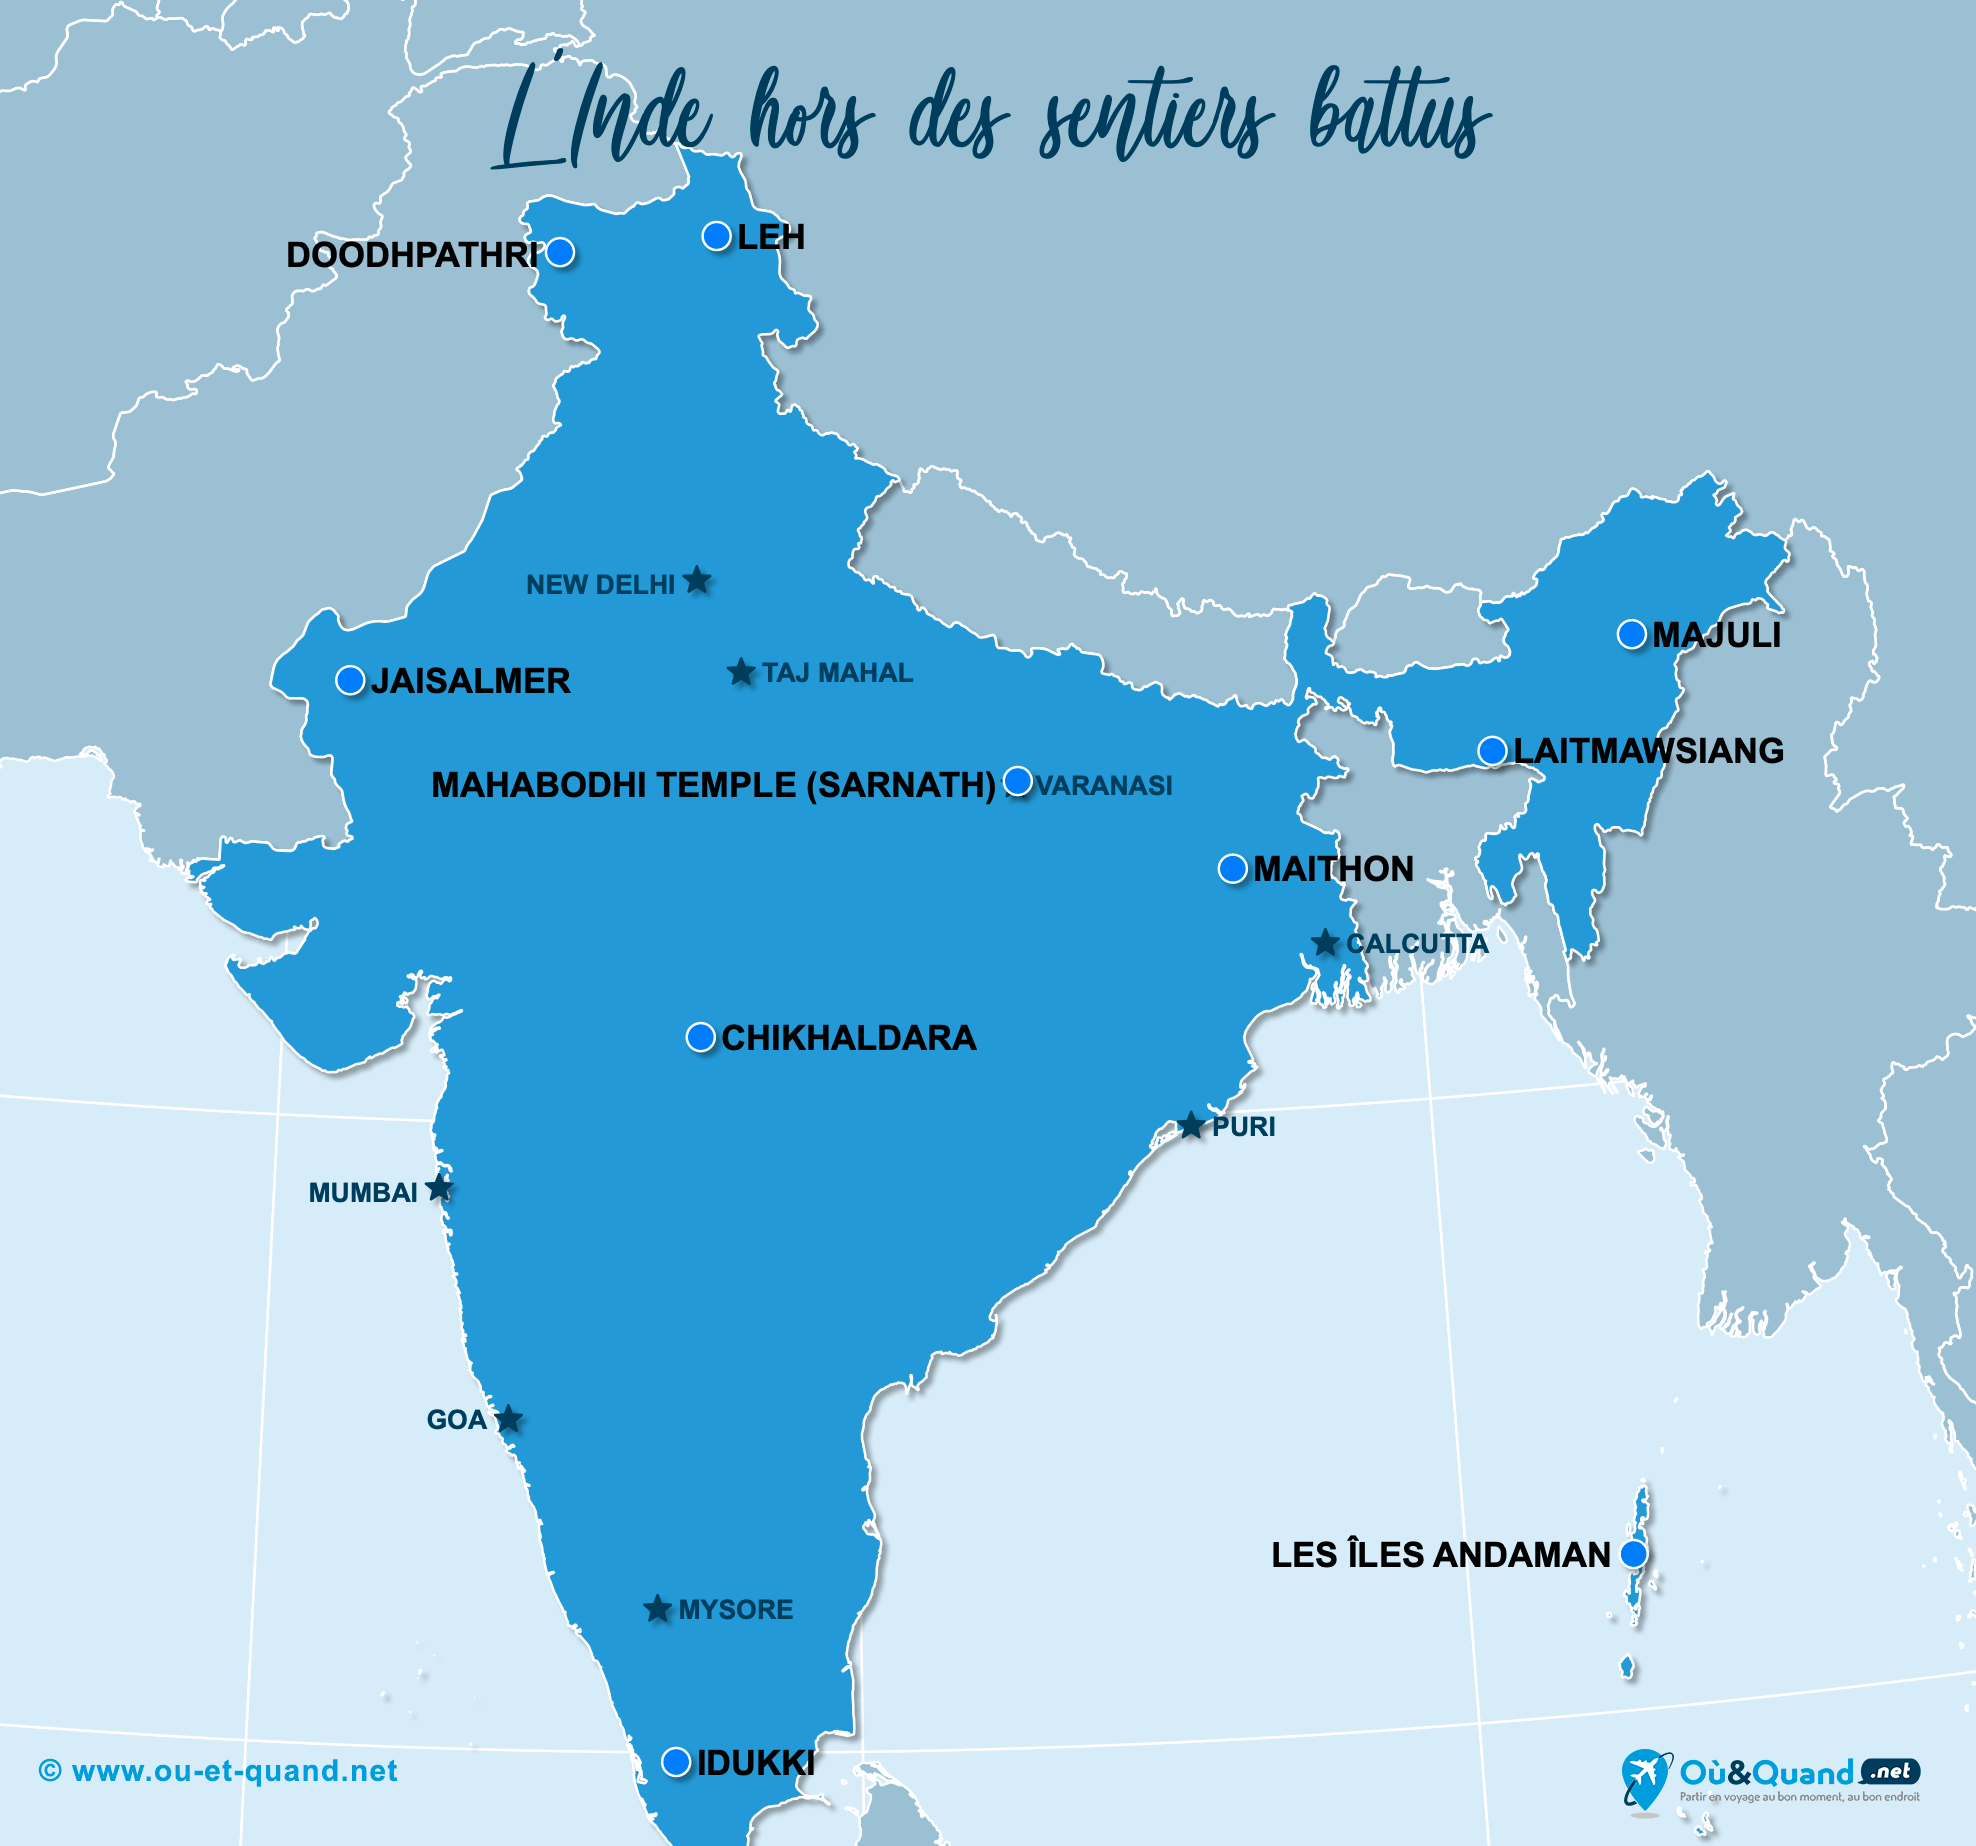 La carte de l'Inde hors des sentiers battus